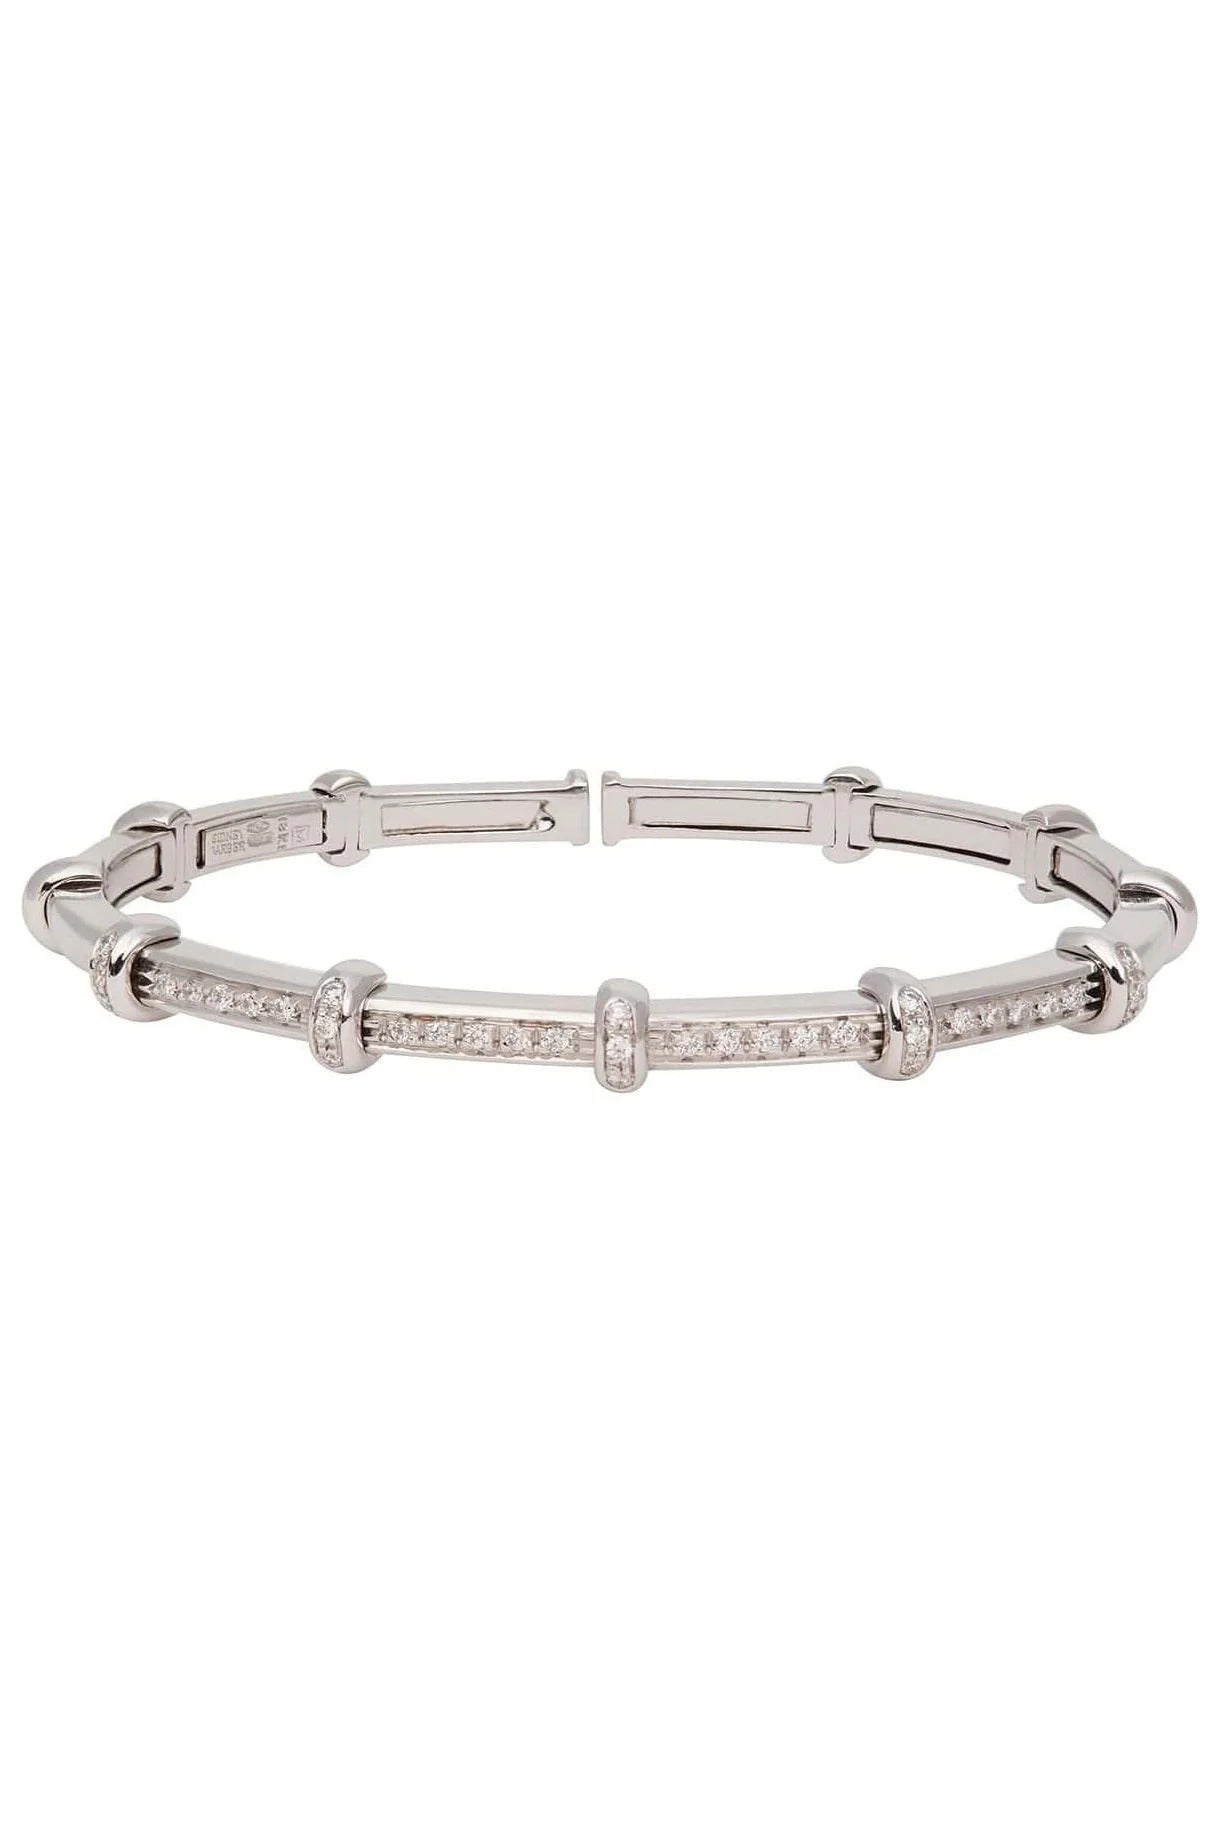 SIDNEY GARBER-Diamond Spring Bracelet-WHITE GOLD